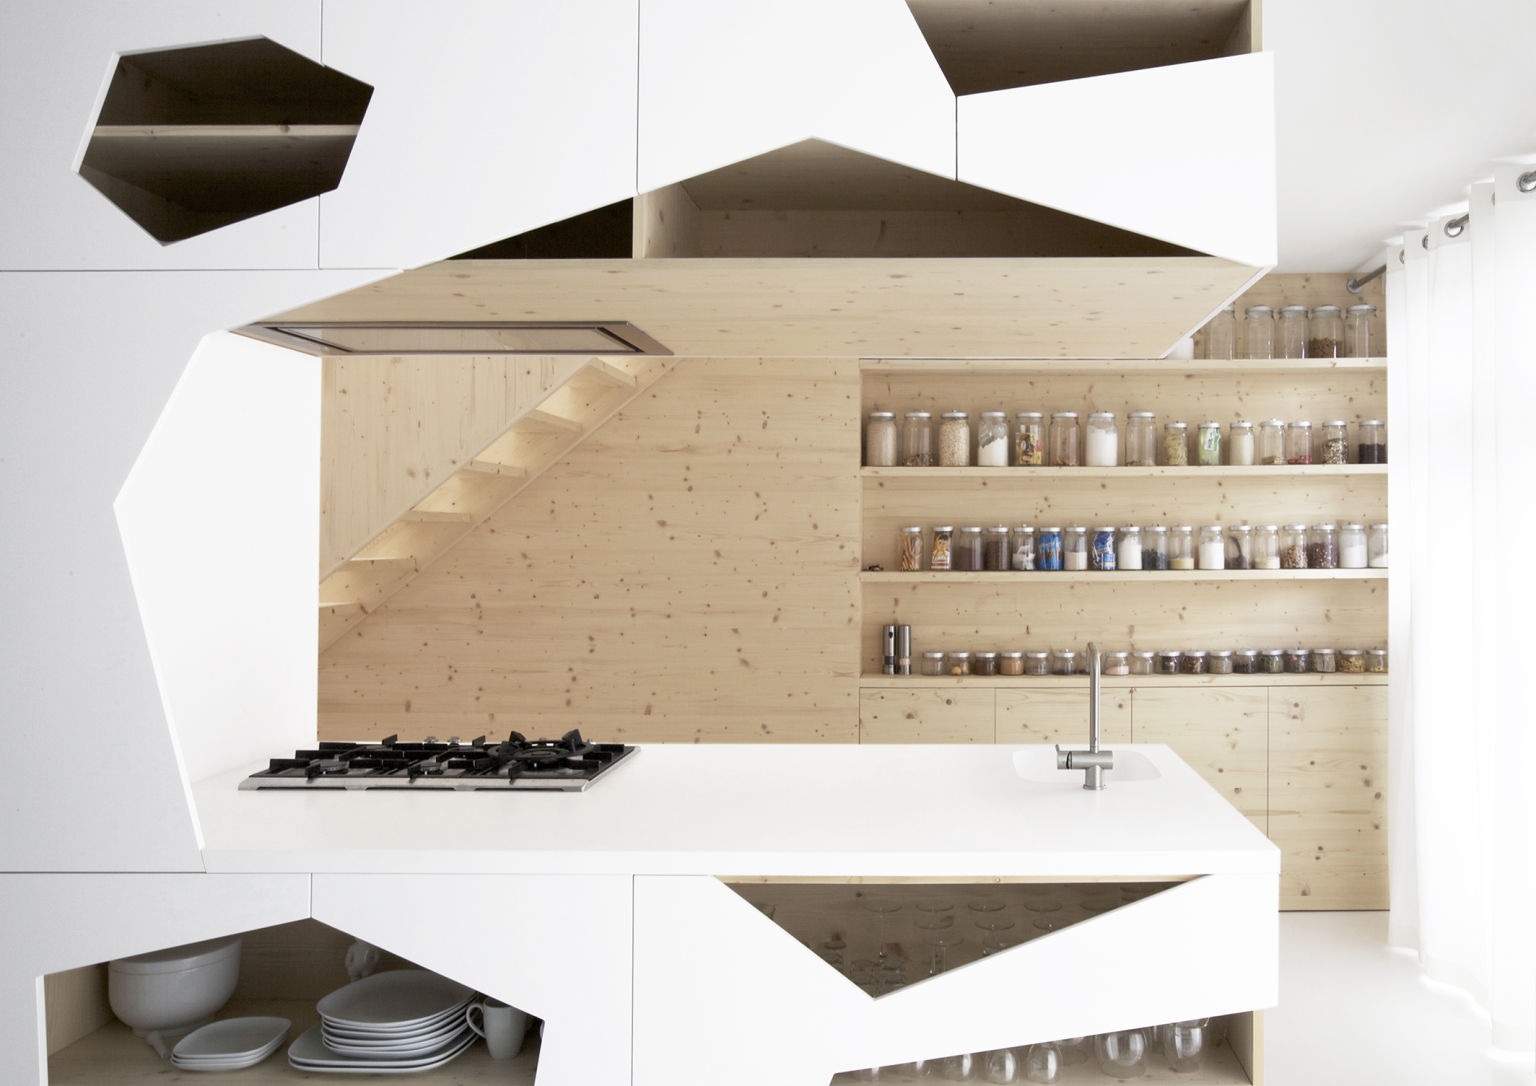 Không có quy định bất dịch nào khi thiết kế một căn phòng. Nếu bạn muốn thiết kế tủ bếp có kiểu dáng hình học thì đã không hẳn là lựa chọn kỳ quặc, độ độc đáo và hấp dẫn của căn bếp thậm chí sẽ còn tăng gấp đôi.